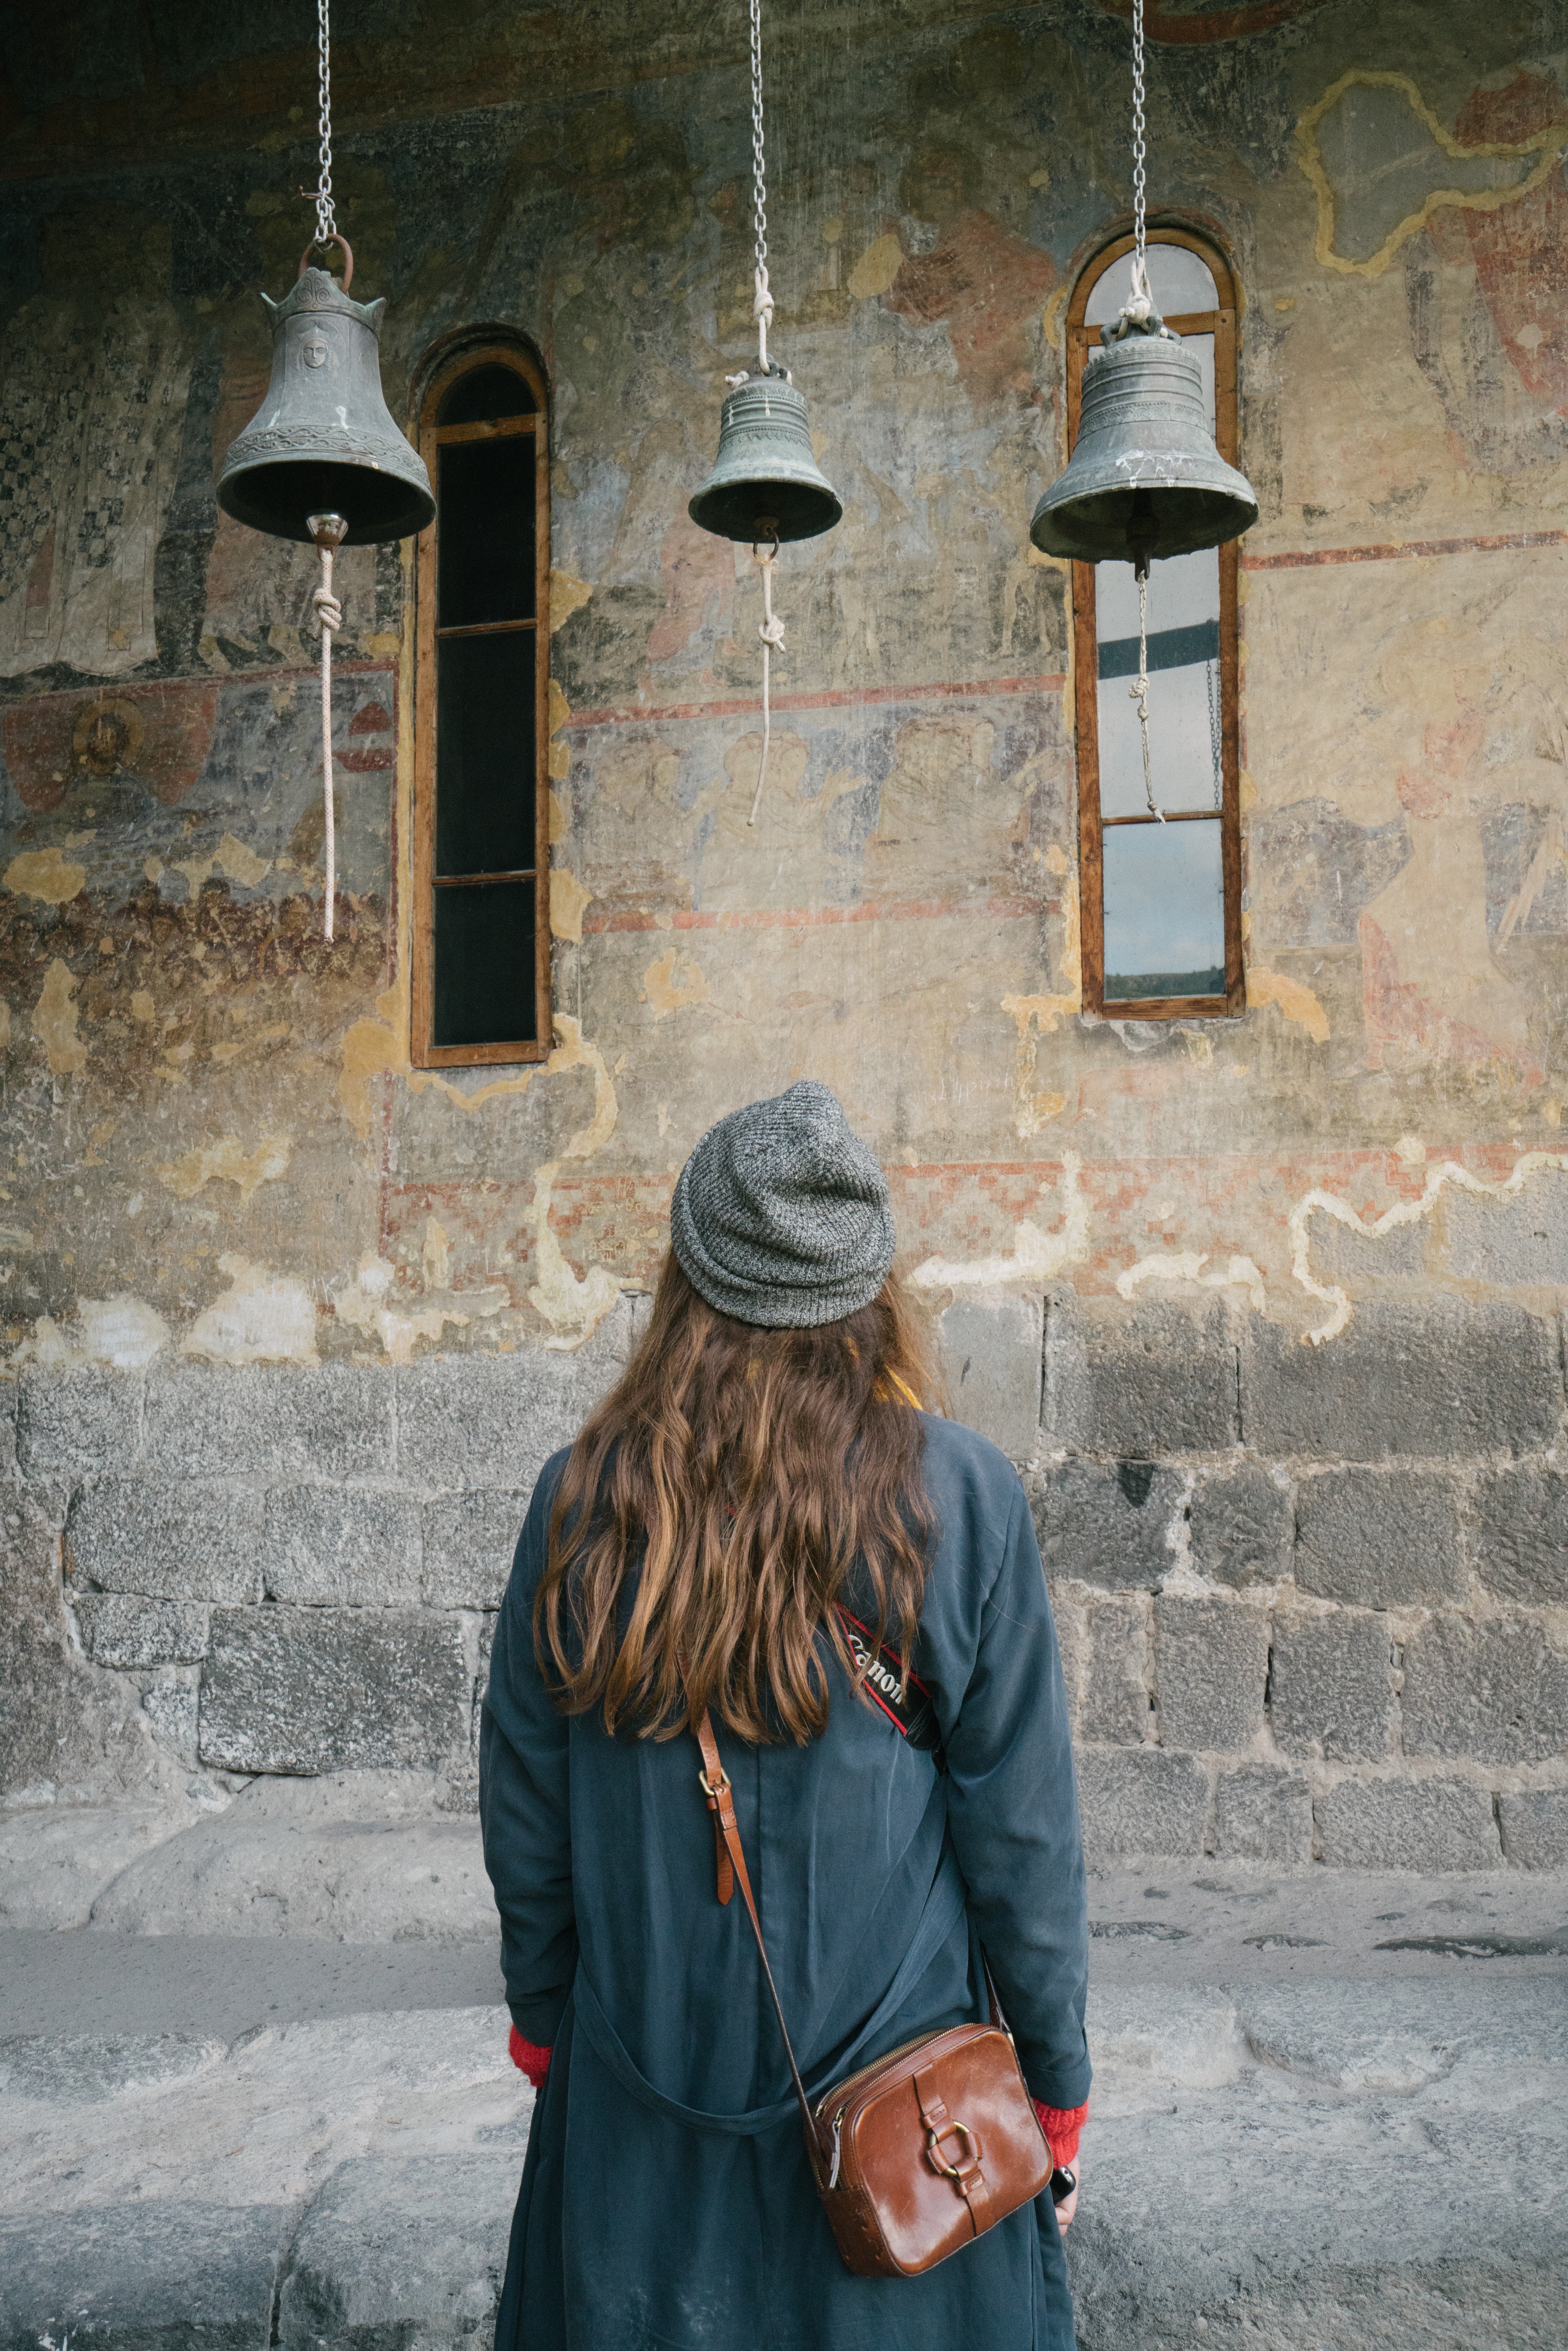 Une femme regardant avec émerveillement trois cloches suspendues dans une église ancienne.